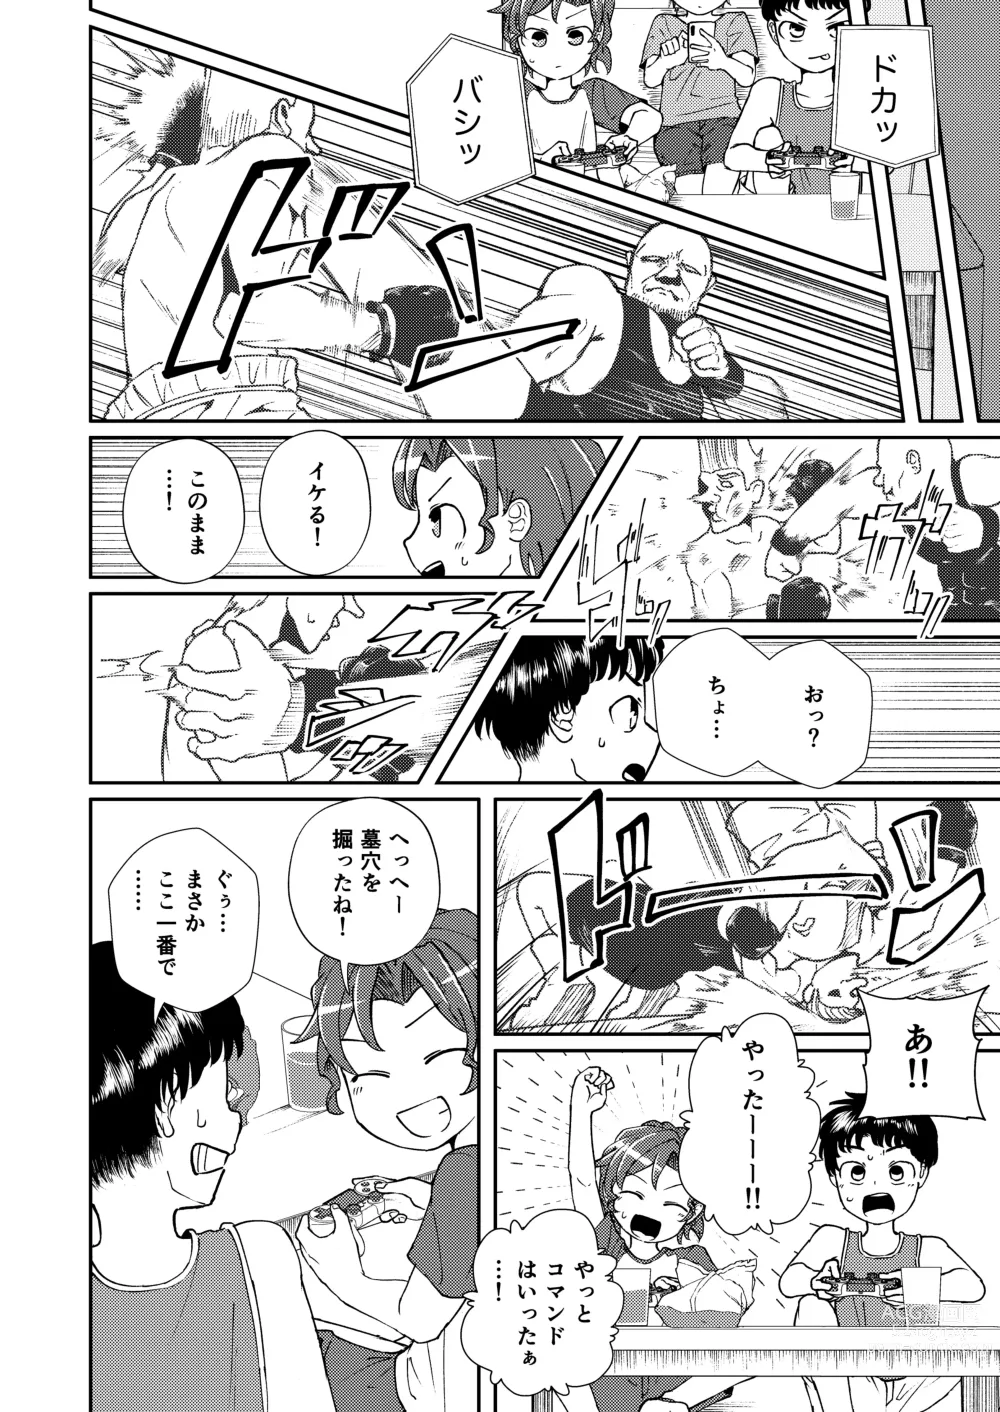 Page 6 of doujinshi Shoujiki Iu to,